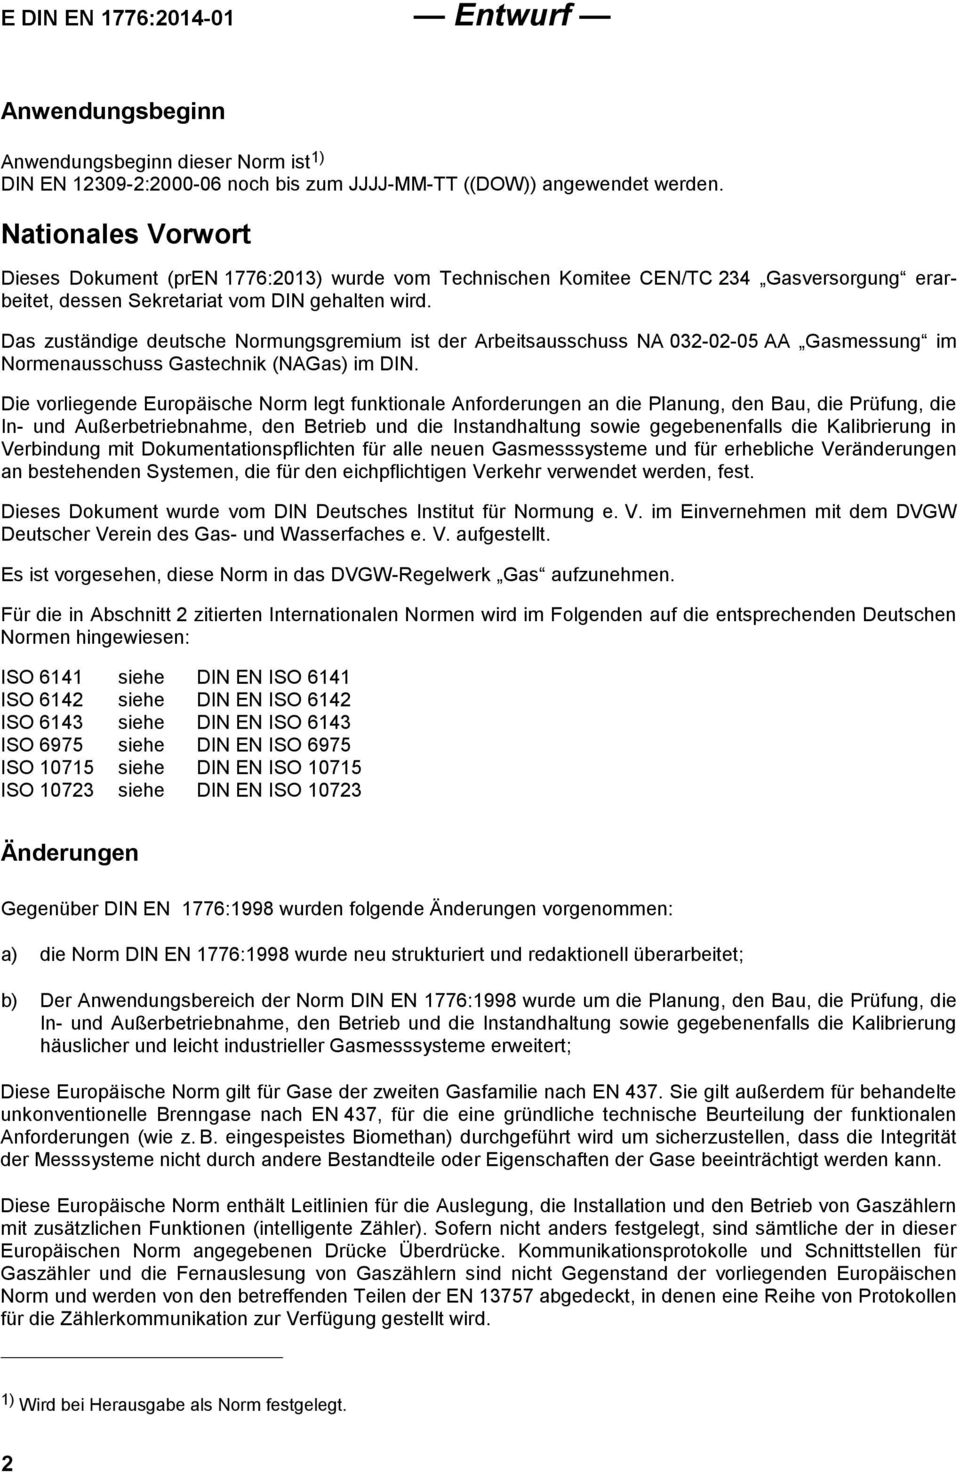 Das zuständige deutsche Normungsgremium ist der Arbeitsausschuss NA 032-02-05 AA Gasmessung im Normenausschuss Gastechnik (NAGas) im DIN.